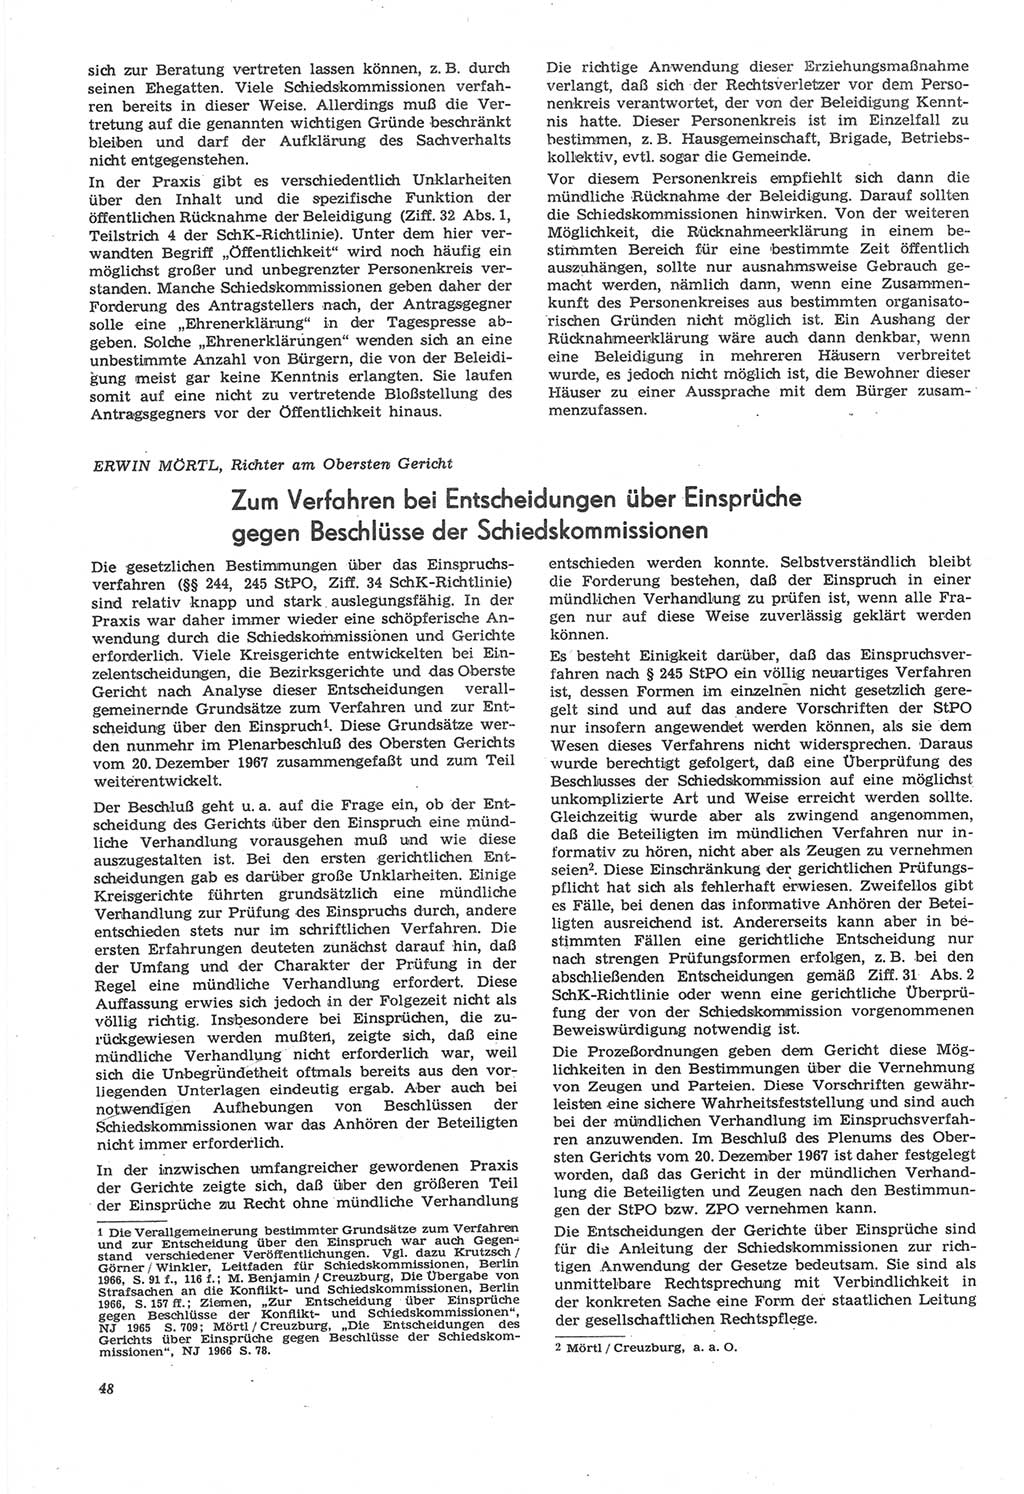 Neue Justiz (NJ), Zeitschrift für Recht und Rechtswissenschaft [Deutsche Demokratische Republik (DDR)], 22. Jahrgang 1968, Seite 48 (NJ DDR 1968, S. 48)